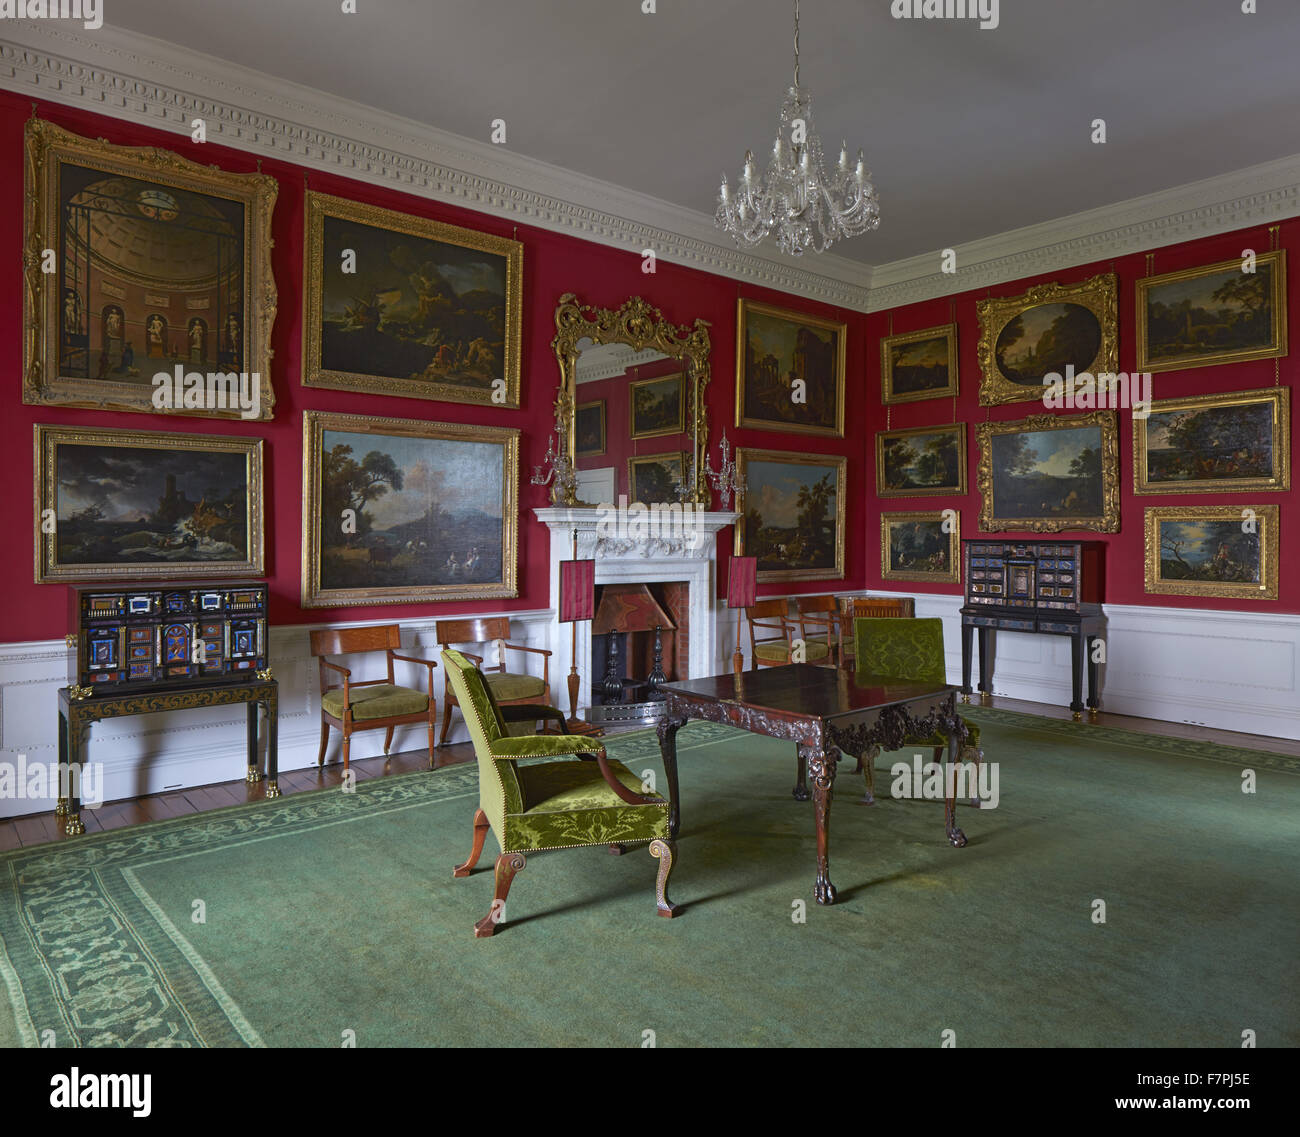 Das Kabinett Zimmer im Stourhead, Wiltshire. Stourhead House enthält eine einzigartige Regency-Bibliothek, Chippendale-Möbel und inspirierende Gemälde. Stockfoto